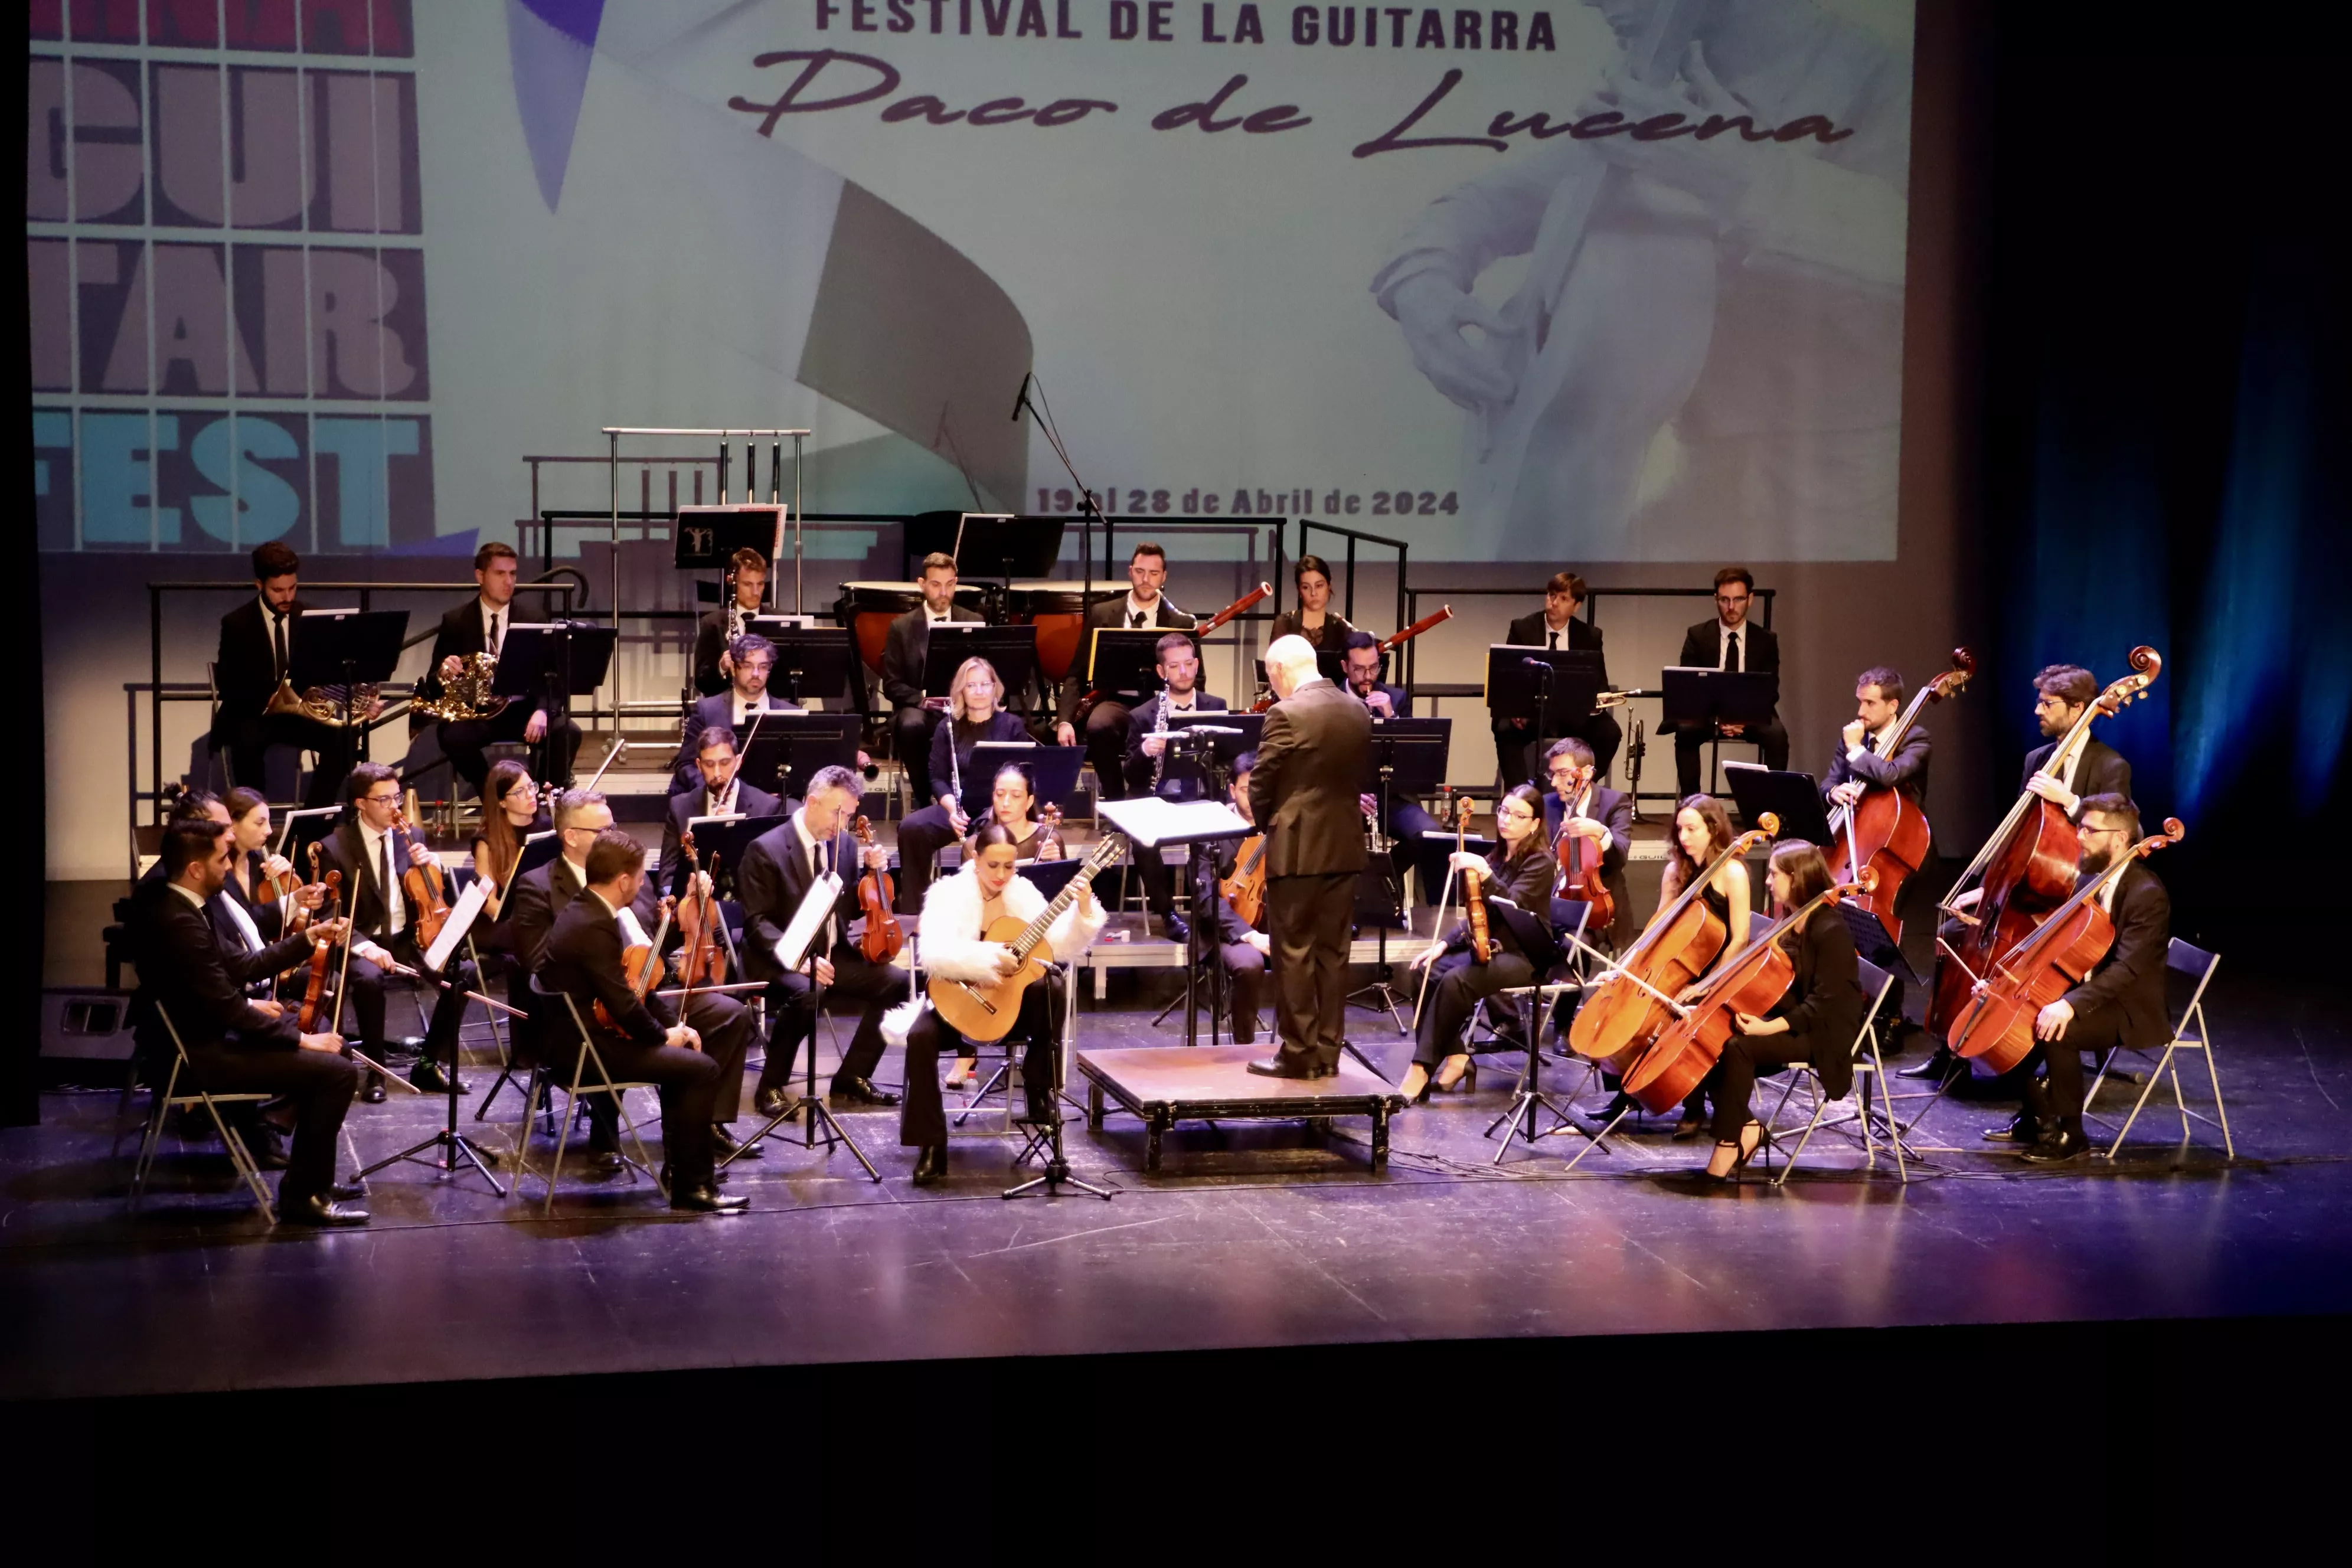 Concierto de clausura del "Lucena Guitar Fest" Paco de Lucena con la Orquesta Ciudad de Almería